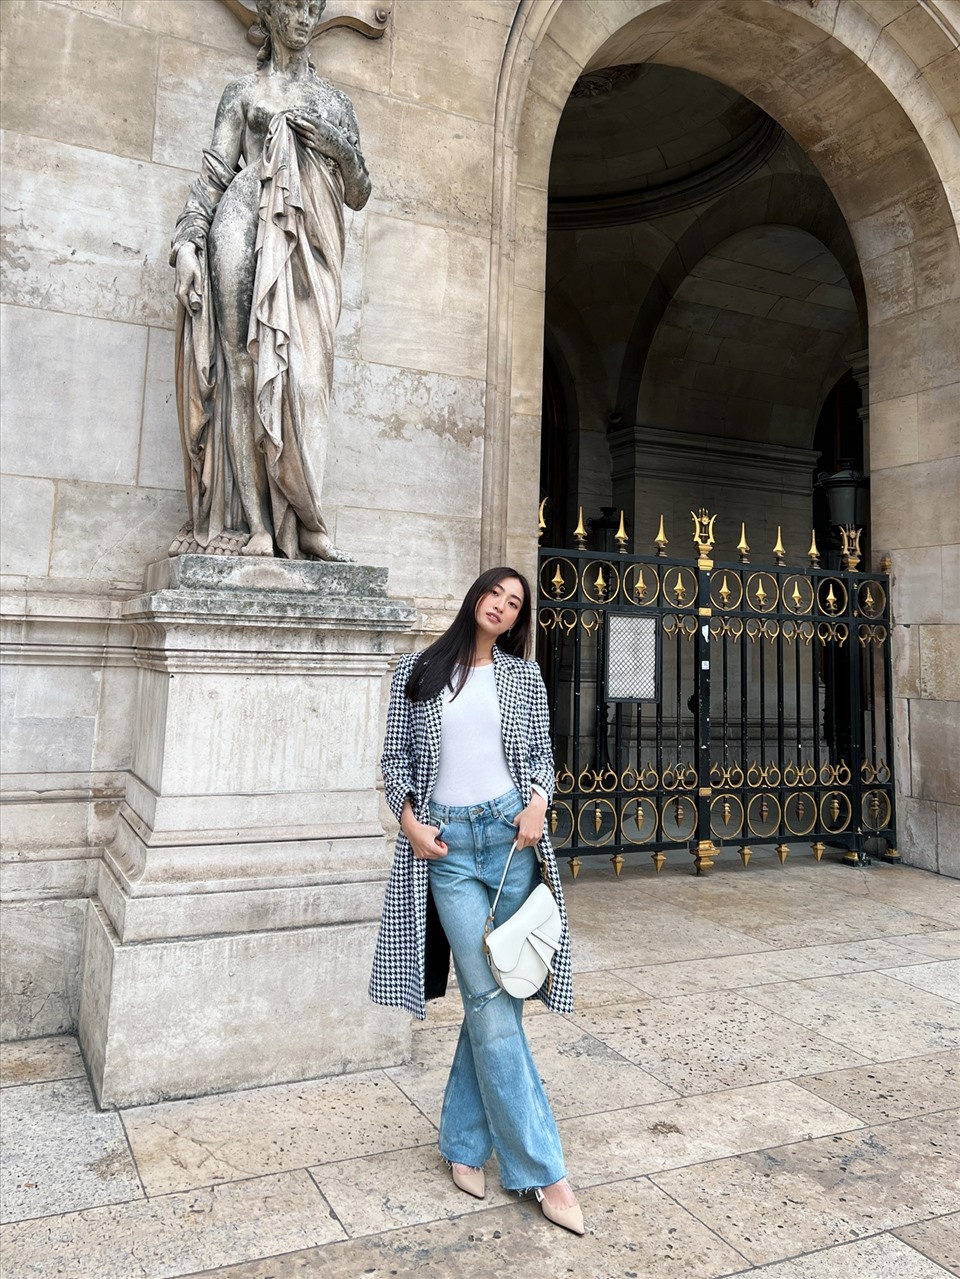 Hoa hậu Lương Thùy Linh đã chính thức có mặt tại Pháp để tham dự Paris Fashion Week năm nay. Lần đầu tiên đặt chân đến nước Pháp, nàng hậu sinh năm 2000 chia sẻ mình bị jetlag và đã thức dậy từ 4h sáng do lệch múi giờ. Mặc dù vậy nhưng cô nàng vẫn không quên tranh thủ cập nhật những hình ảnh mới nhất của mình trên trang cá nhân.